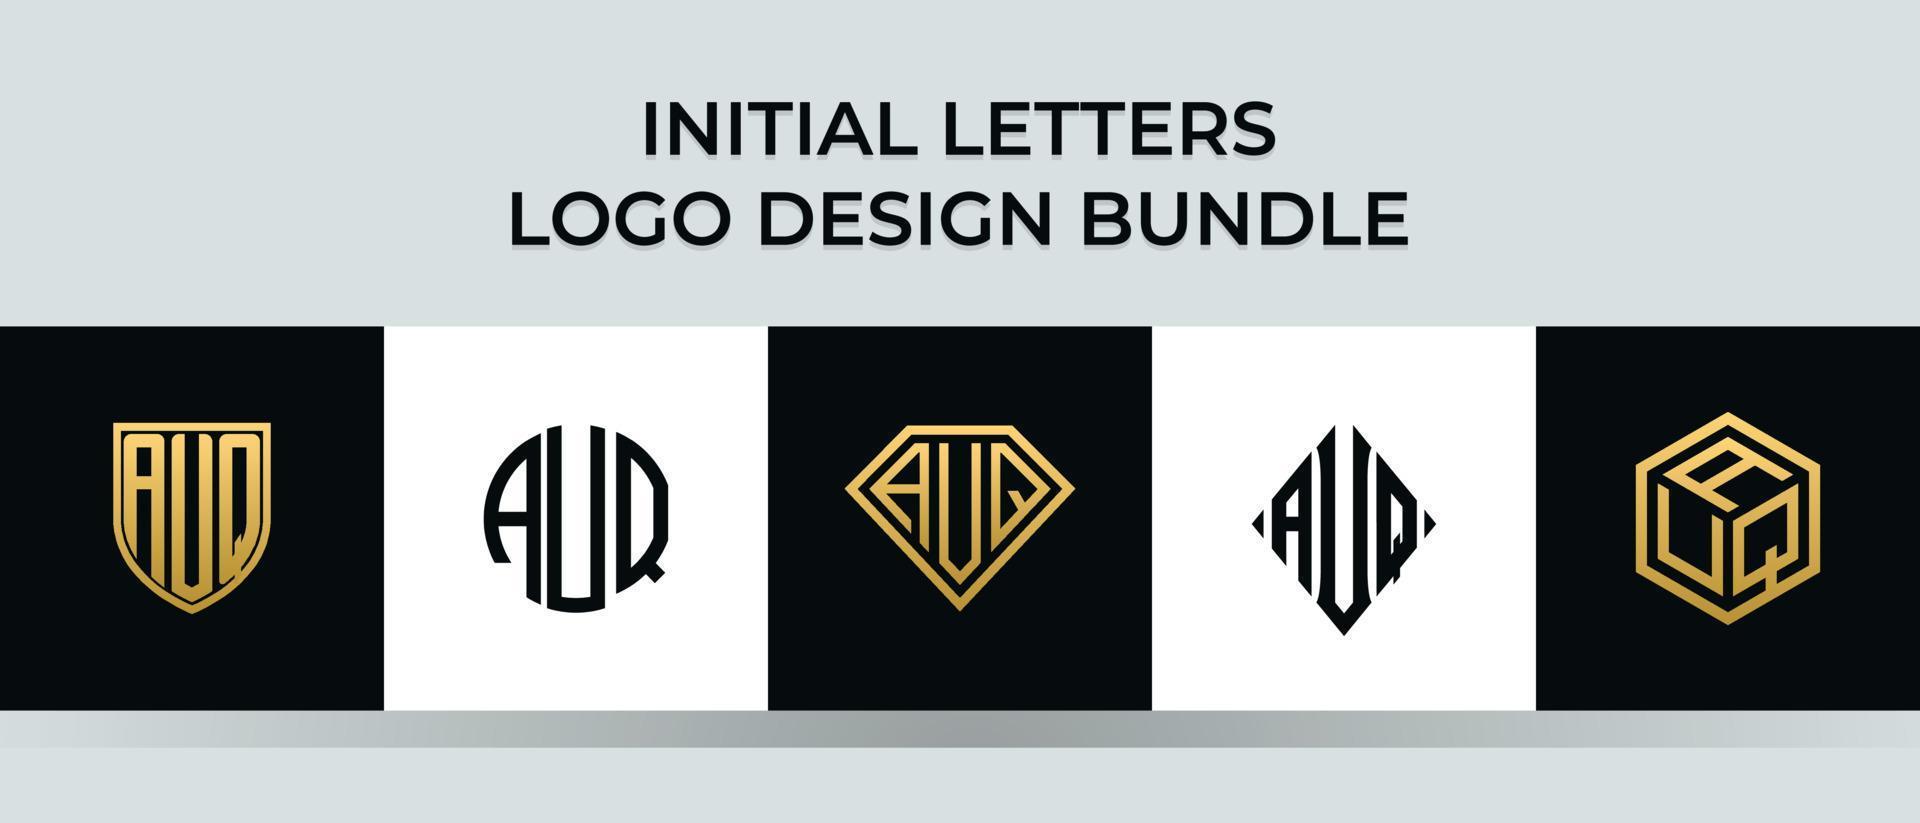 Initial letters AUQ logo designs Bundle vector